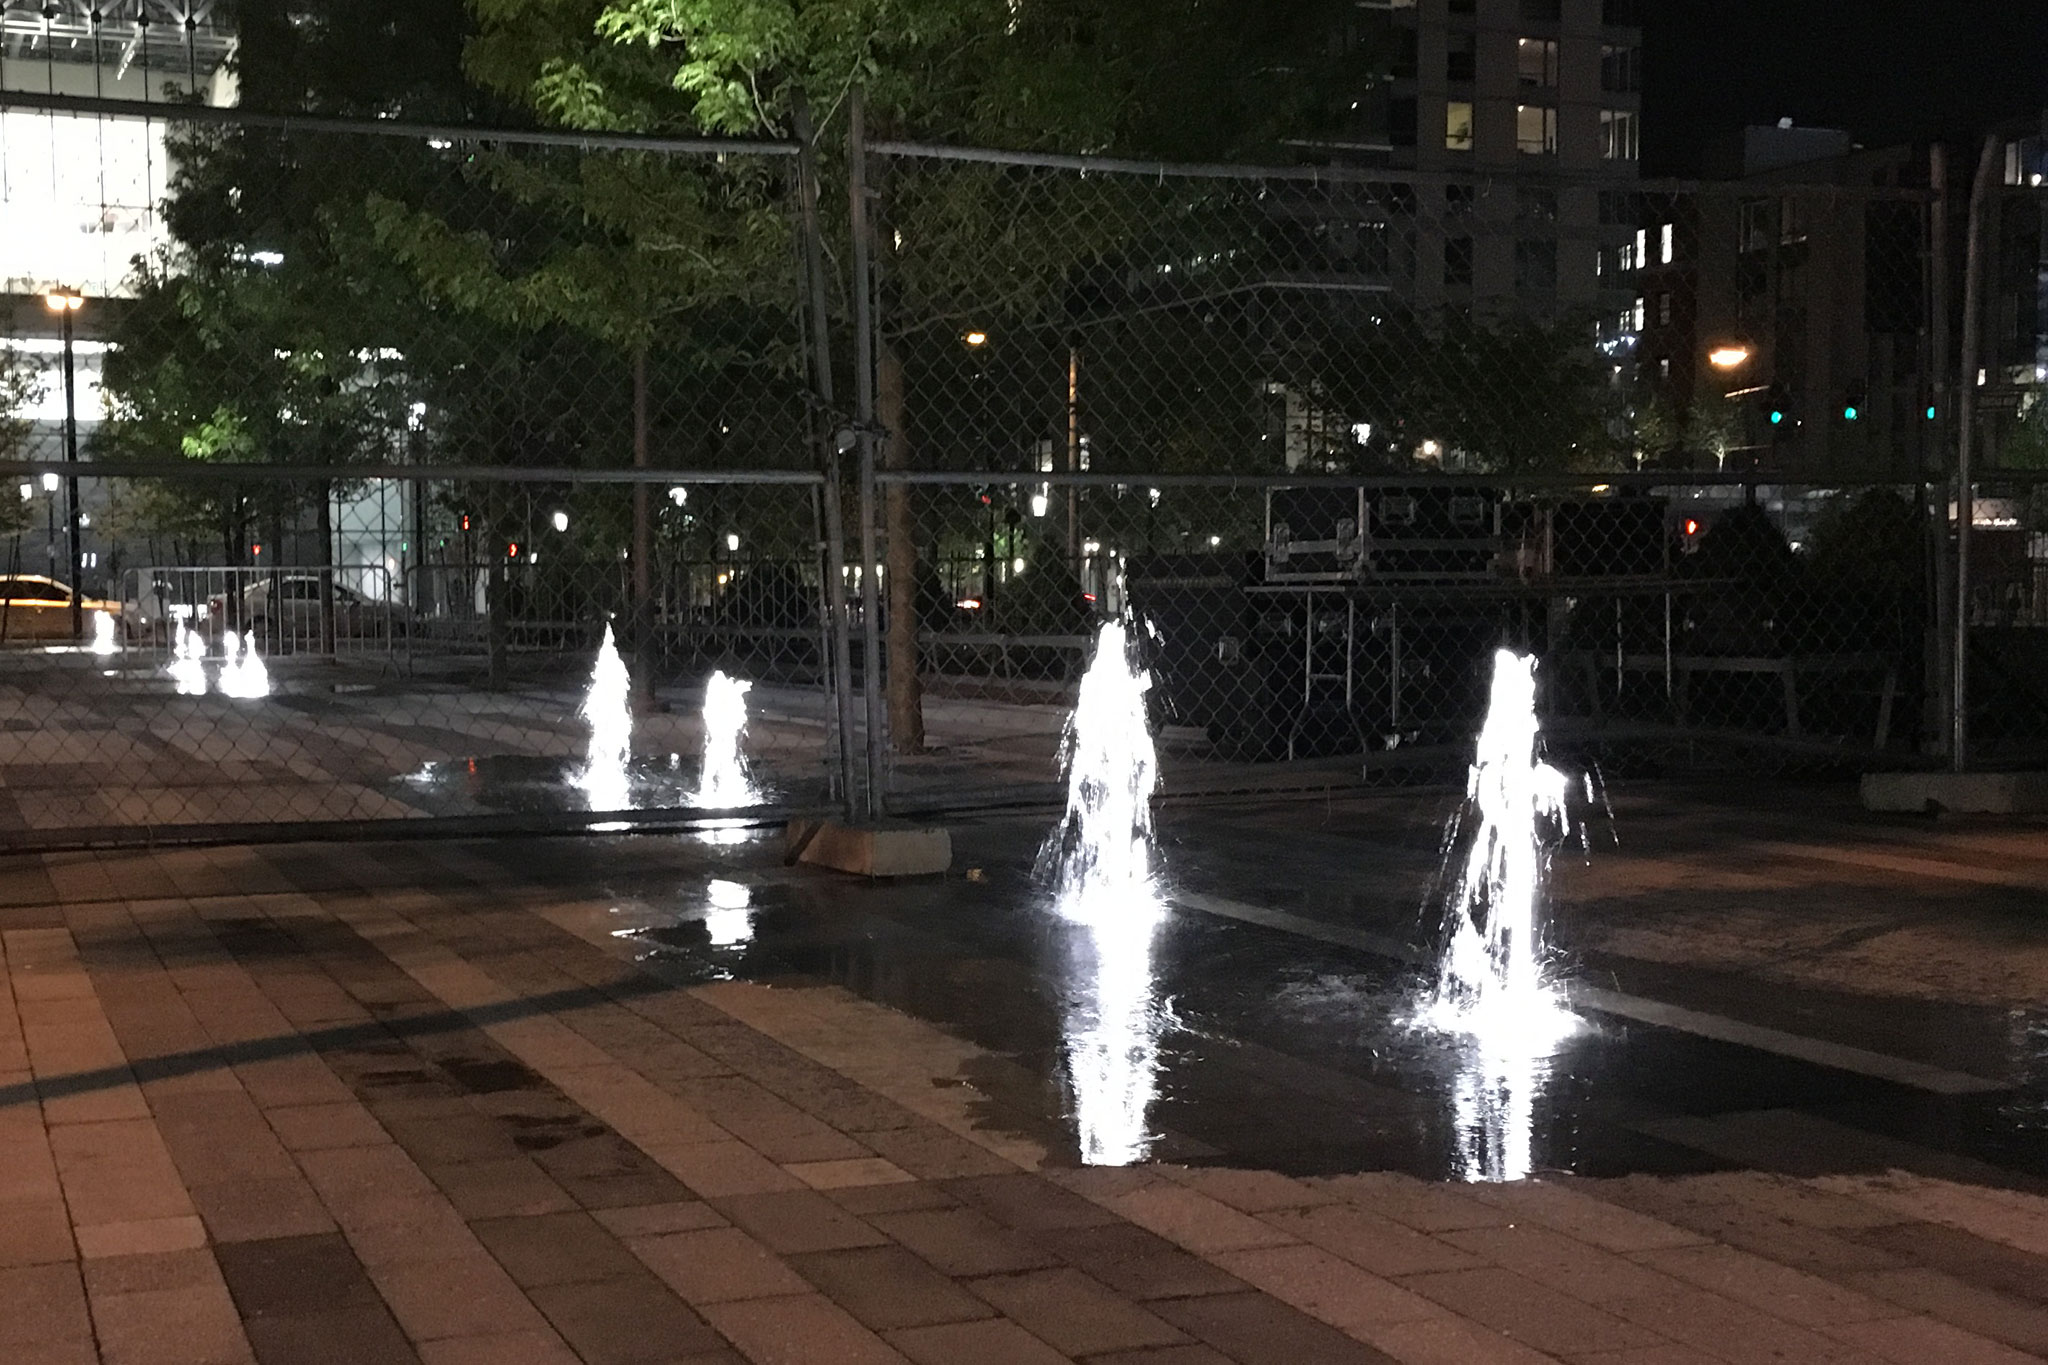 Seaport Interactive Fountain